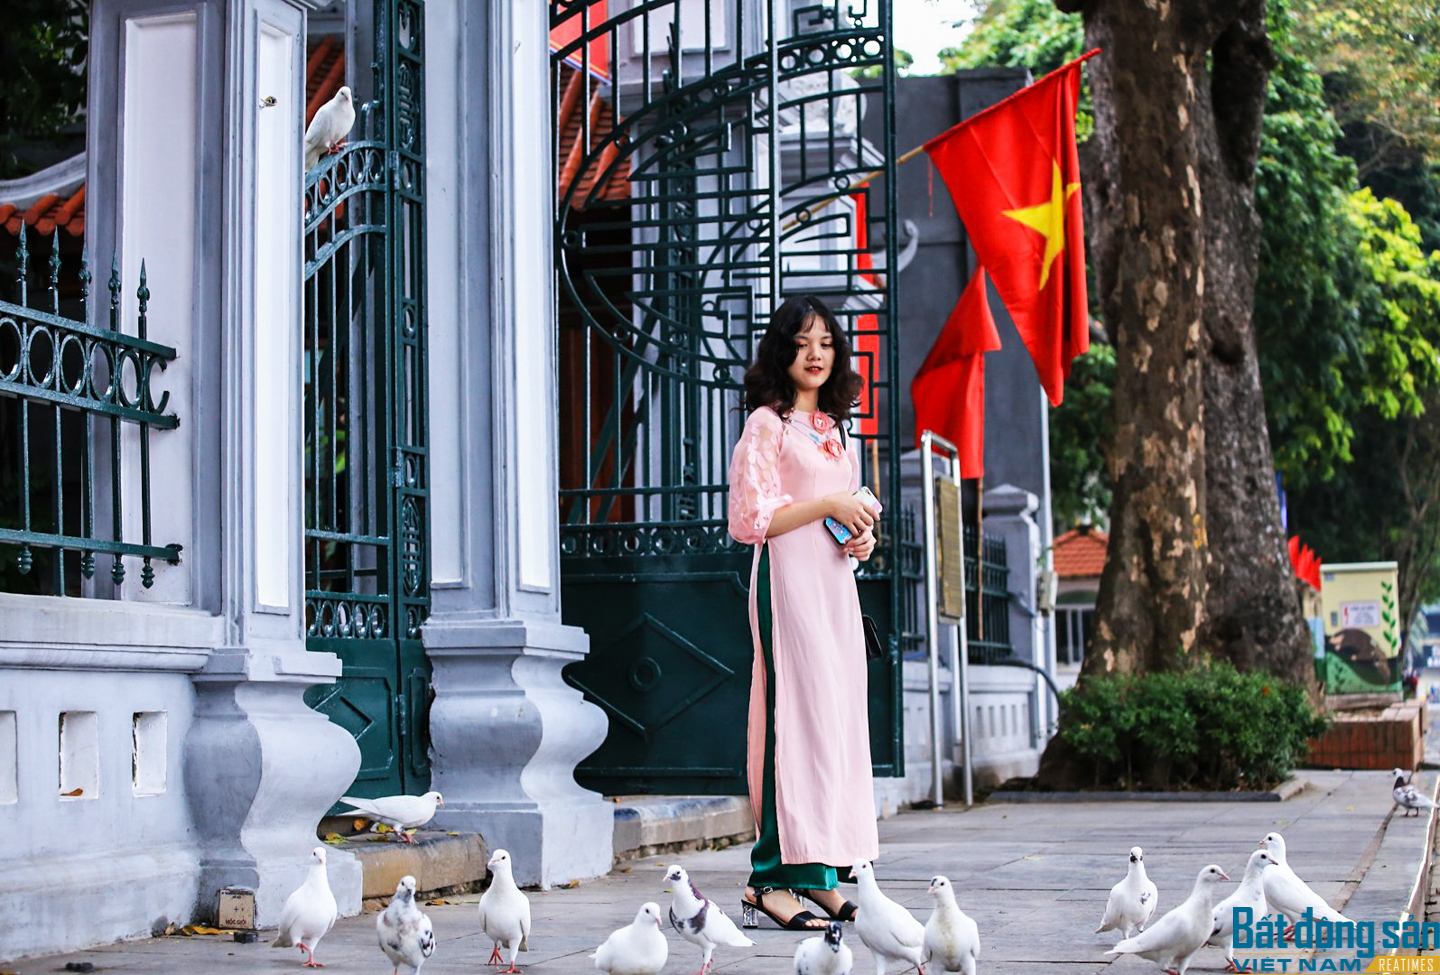 Thủ đô Hà Nội vắng lặng, bình yên ngày mùng 1 Tết